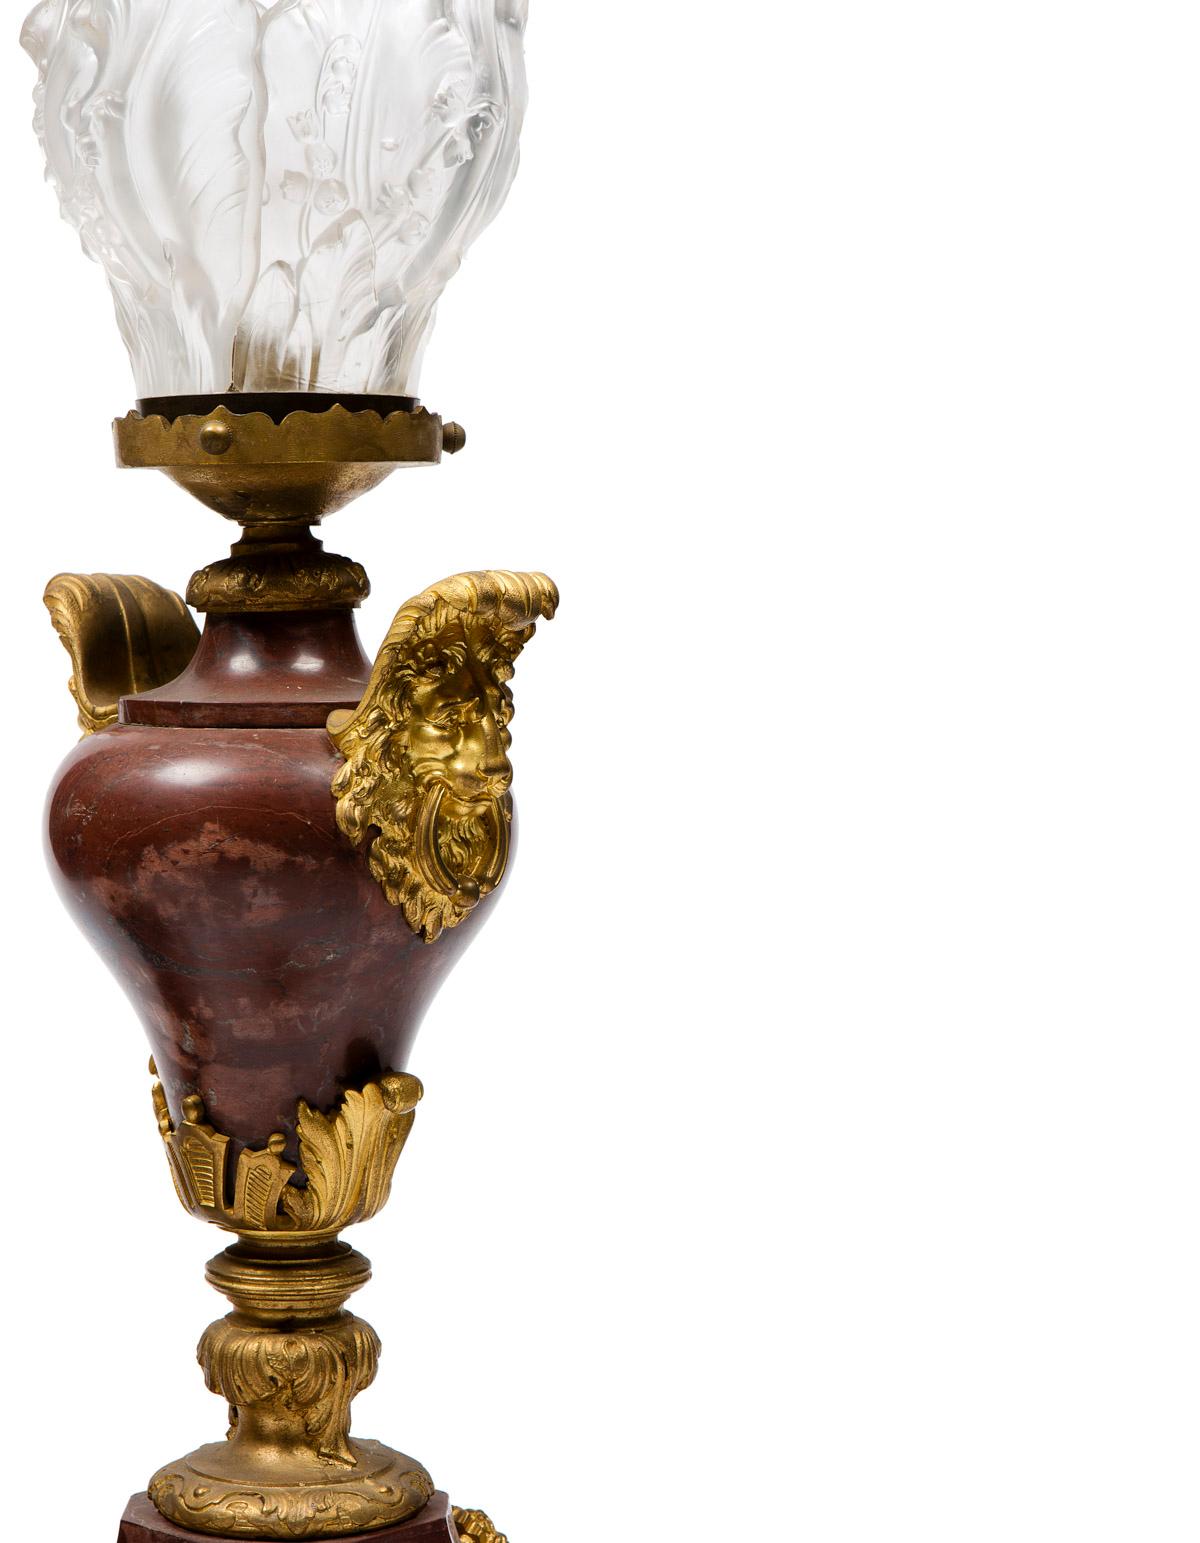 Magnifique paire de lampes en bronze et marbre rouge, de style Louis XVI, elles se terminent par une très jolie flamme en cristal.